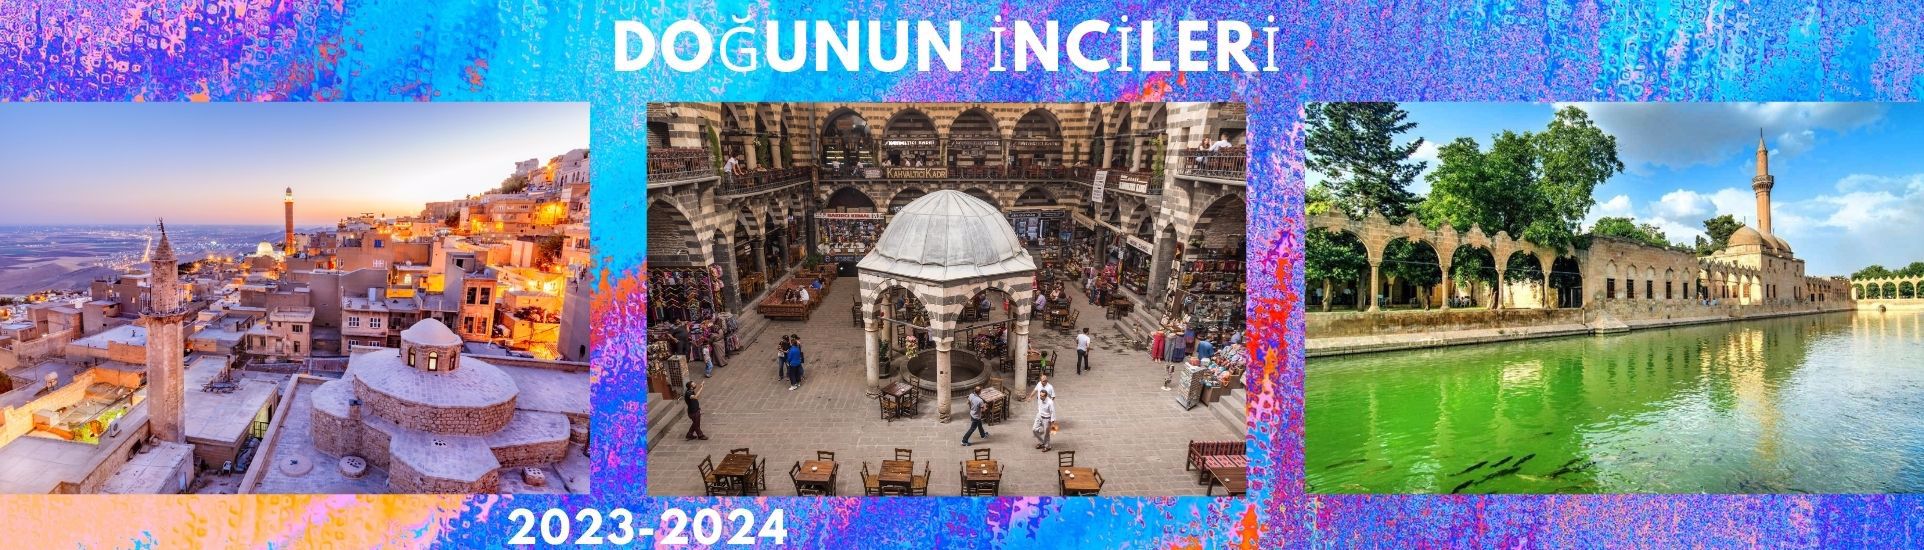 Emrecik turizm ile   lüks yurtiçi turları  Mardin, Adıyaman, Şanlıurfa tüm Türkiye  her bütçeye uygun çözümler üreten , tercih edilen güvenilir acente ile yeni keşifler  edineceksiniz..